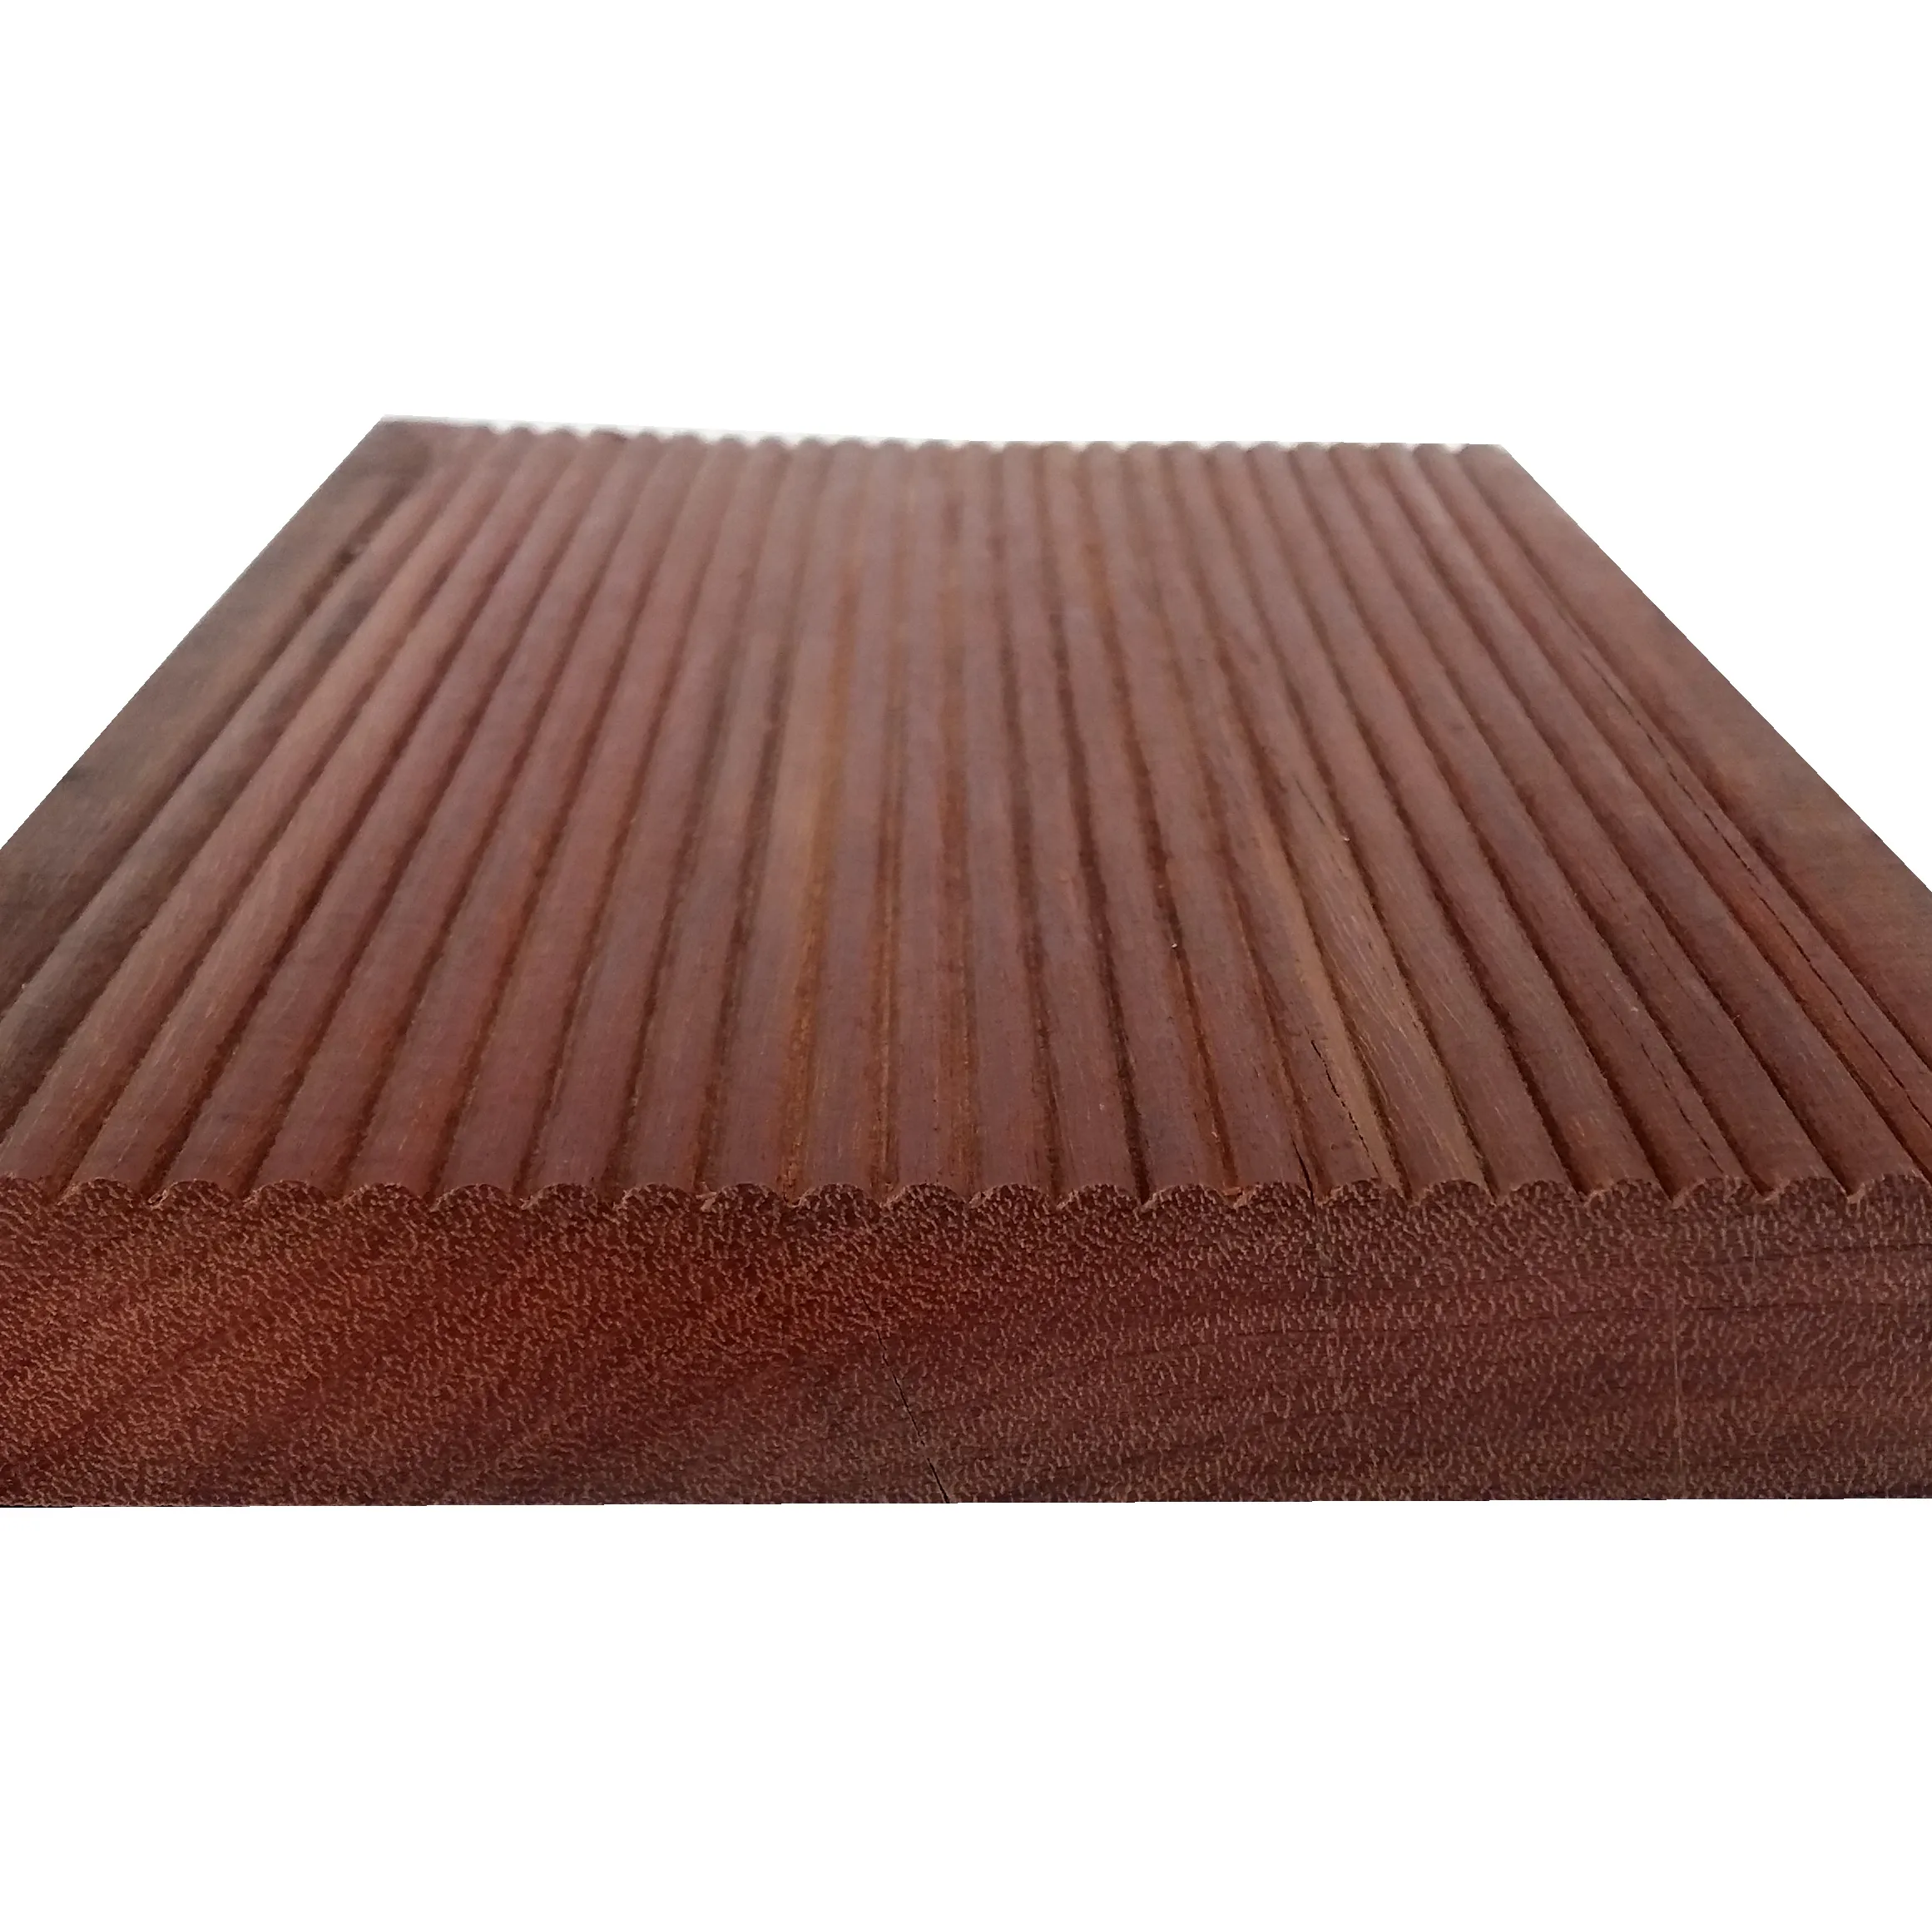 Plancher de sol en bois moderne, solide, outil pour l'extérieur, meilleur prix